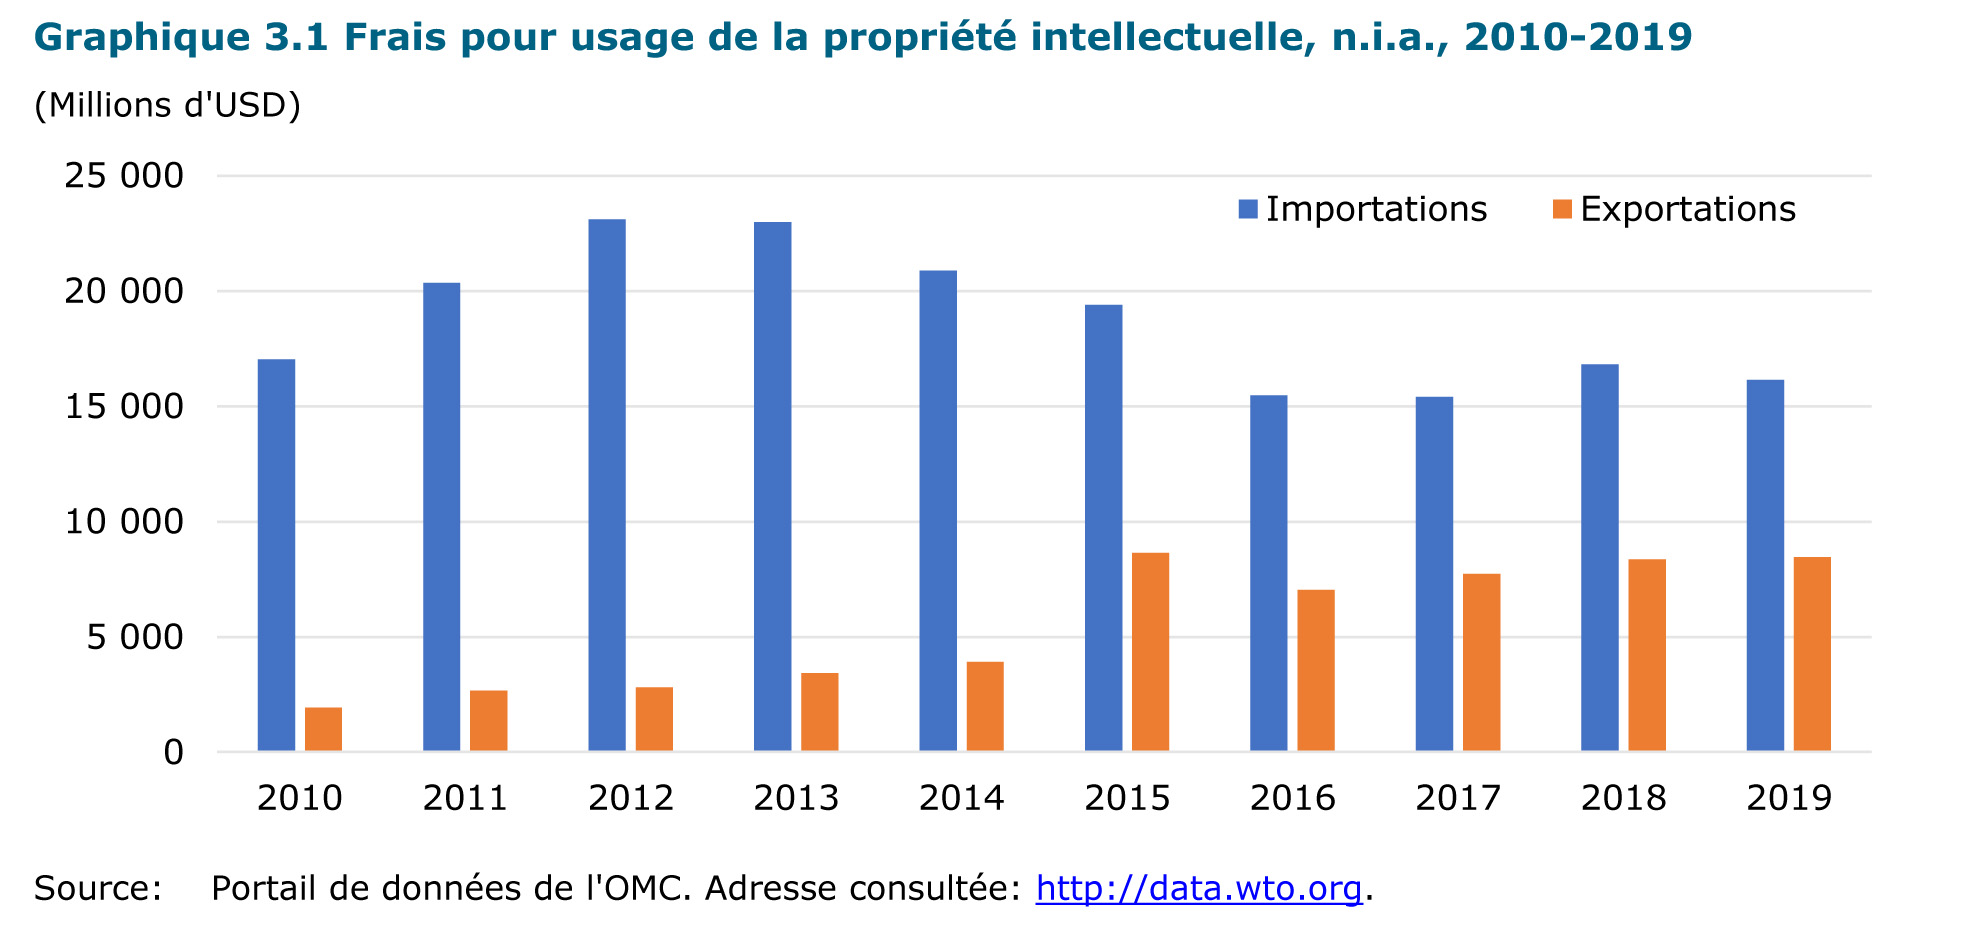 Frais pour usage de la propriété intellectuelle, n.i.a., 2010-2019, p. 80 (source OMC)